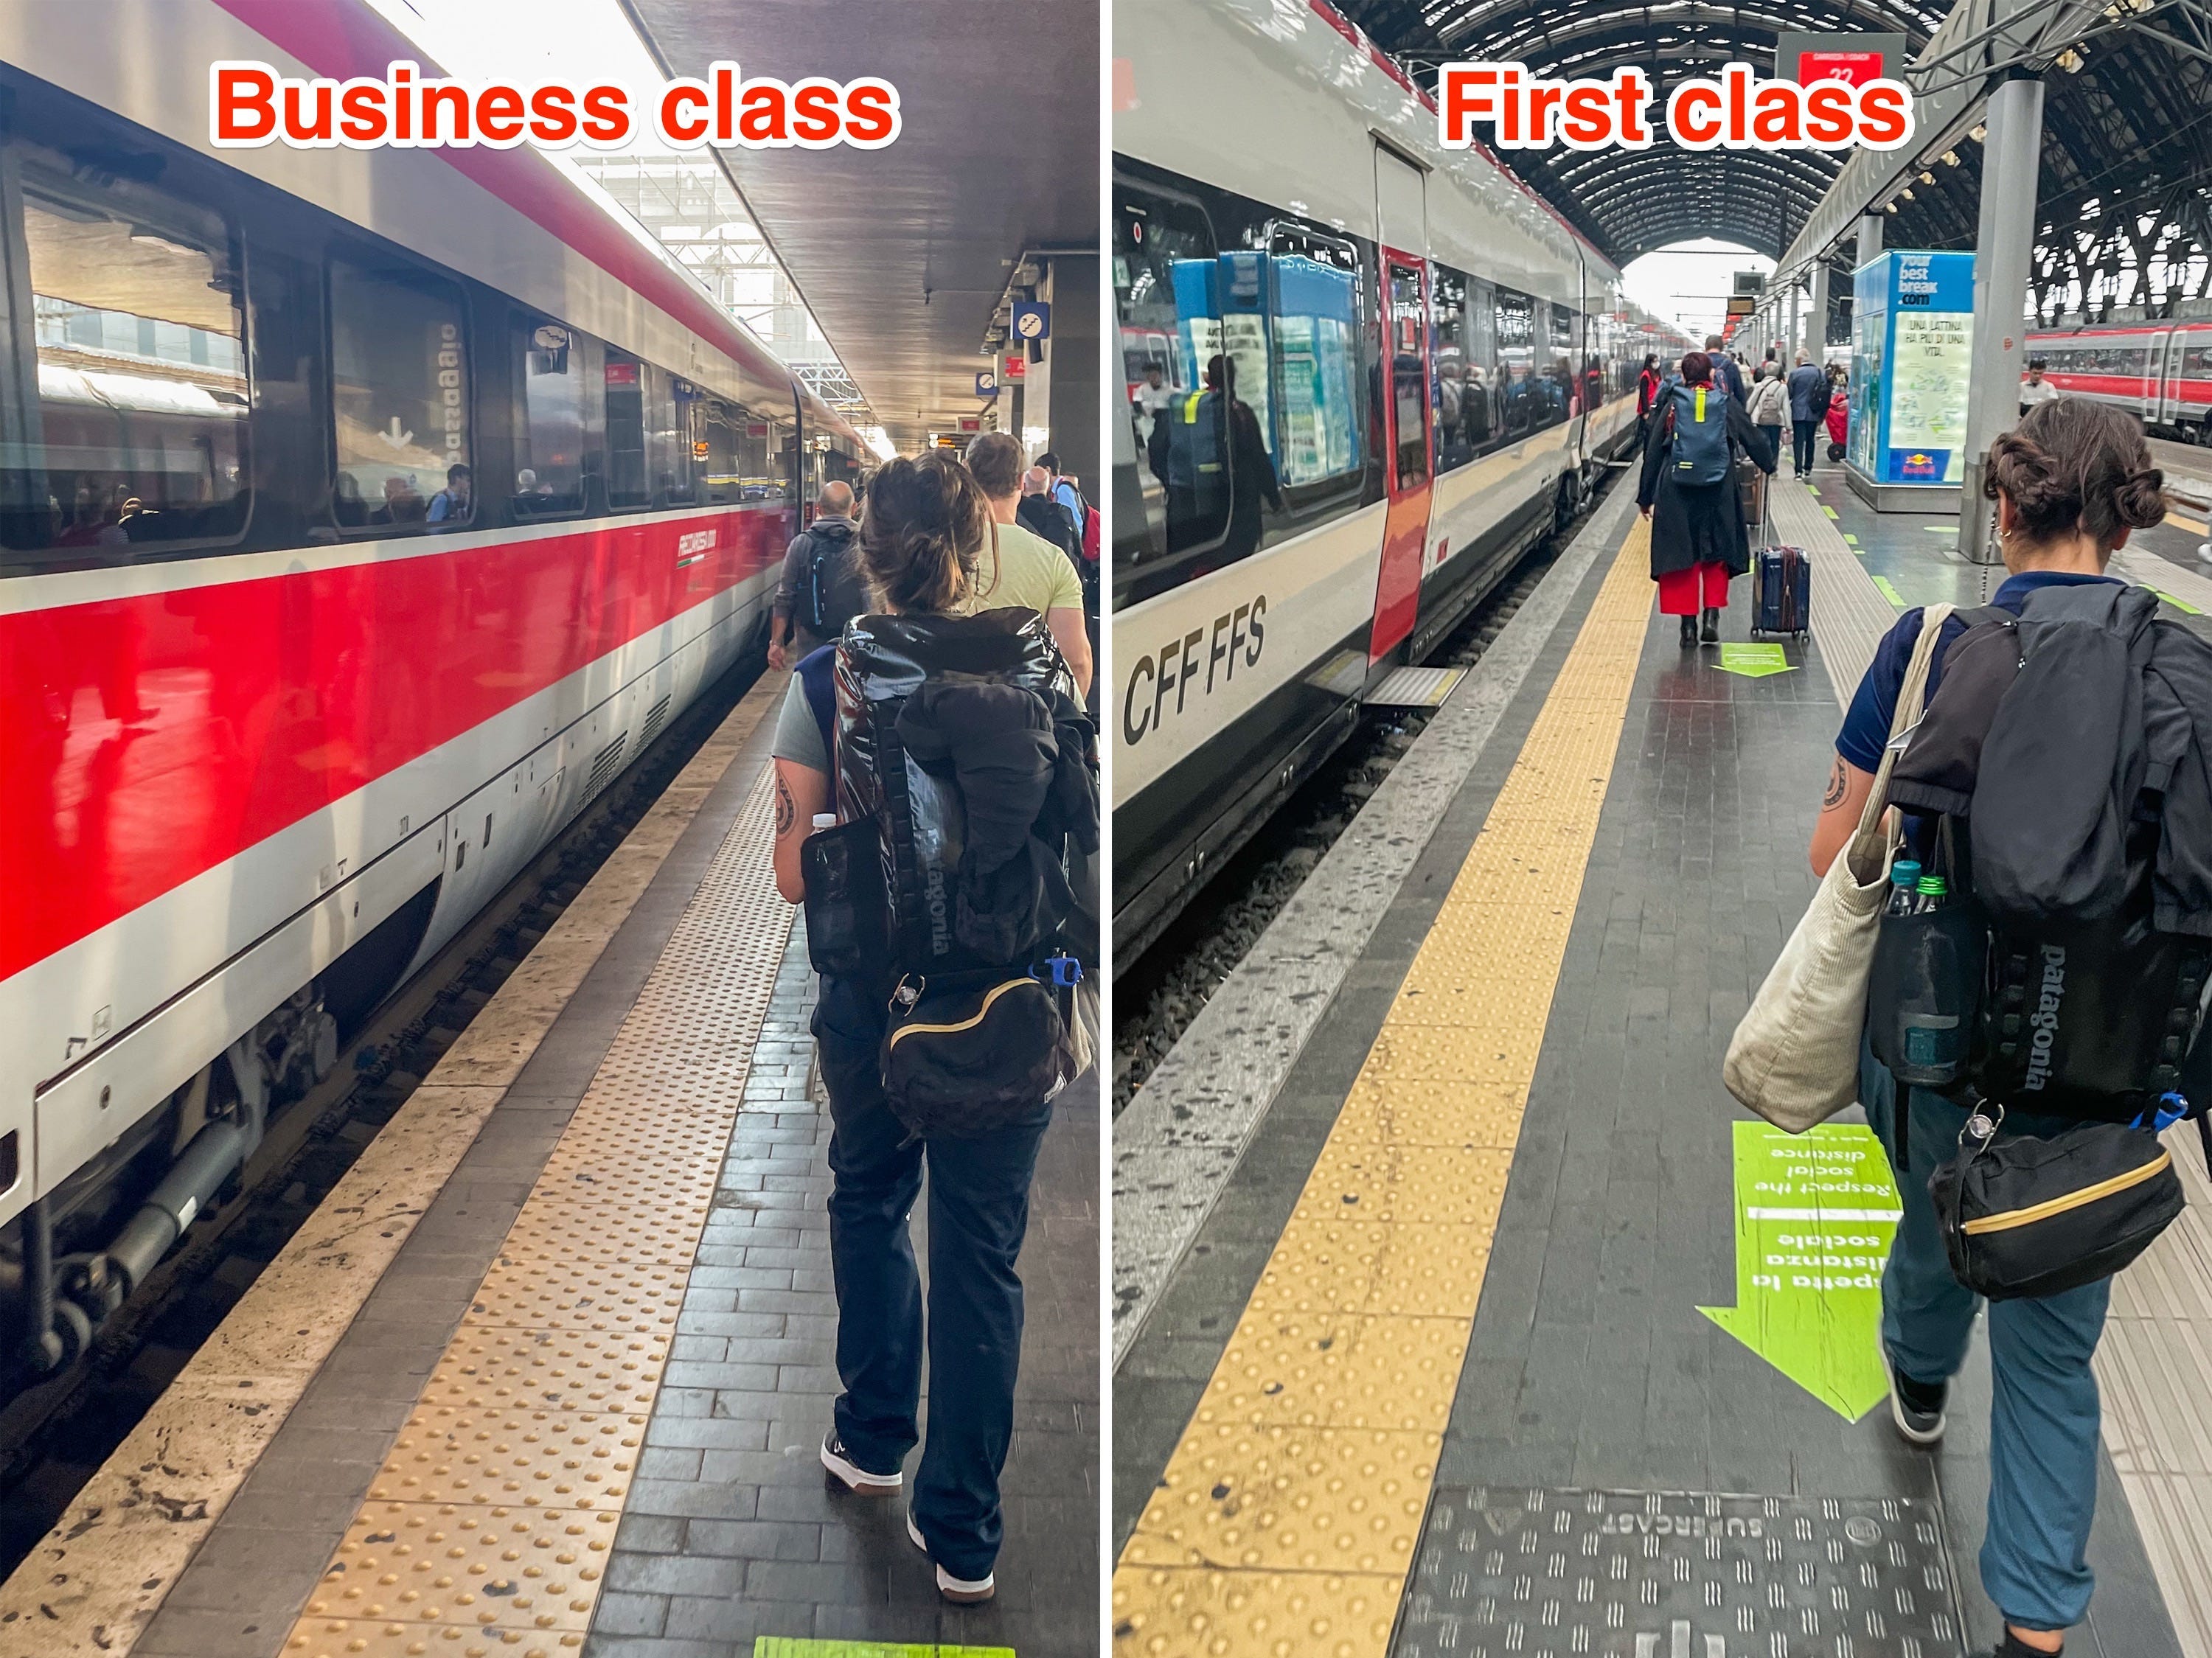 Der Autor fährt Trenitalia-Züge in der Business- (L) und First-Klasse (R).